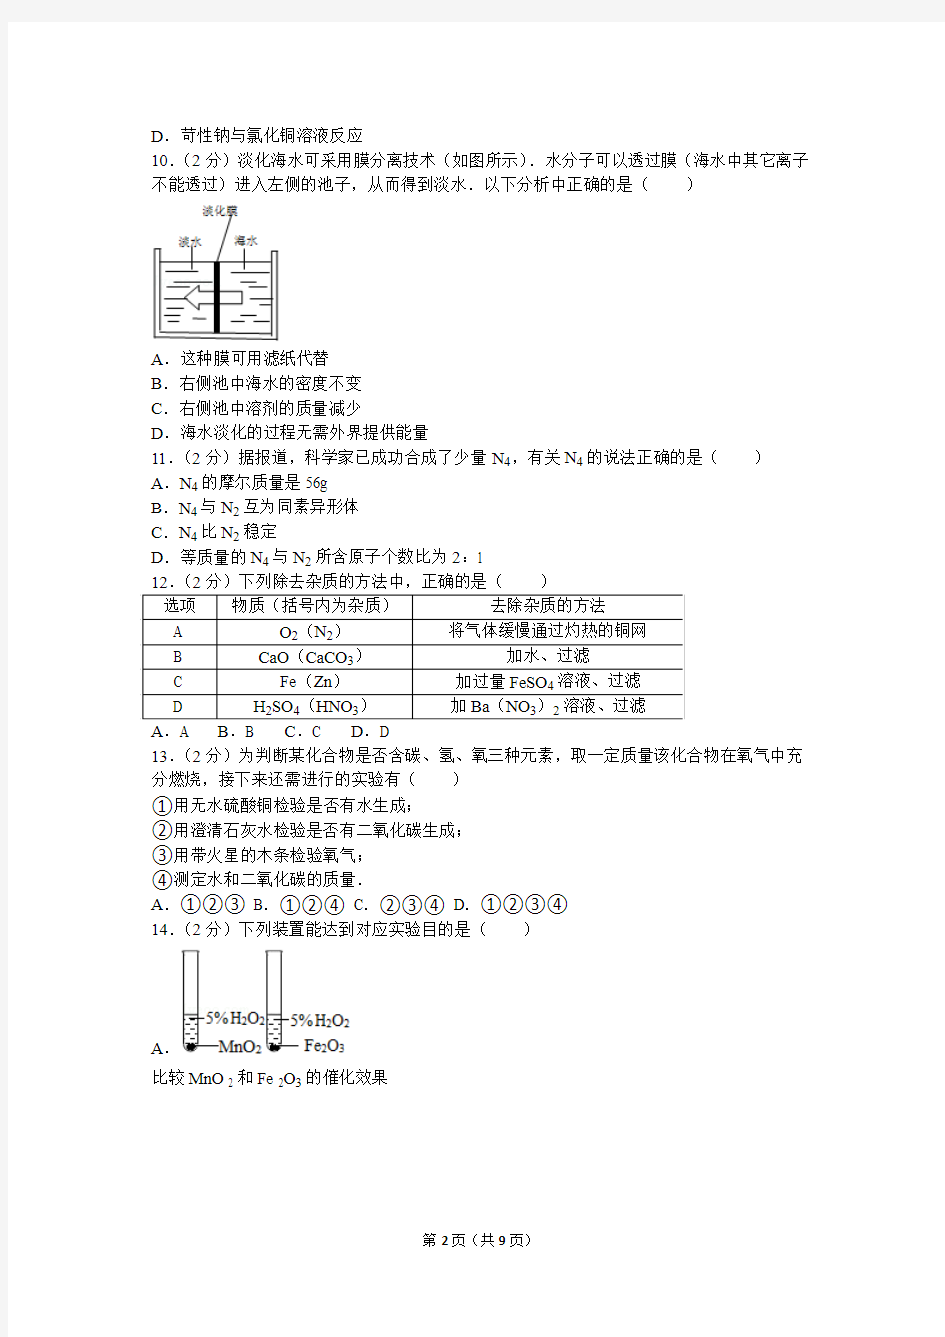 2010年第二十届“天原杯”全国初中学生化学素质和实验能力竞赛(上海赛区)初赛试卷